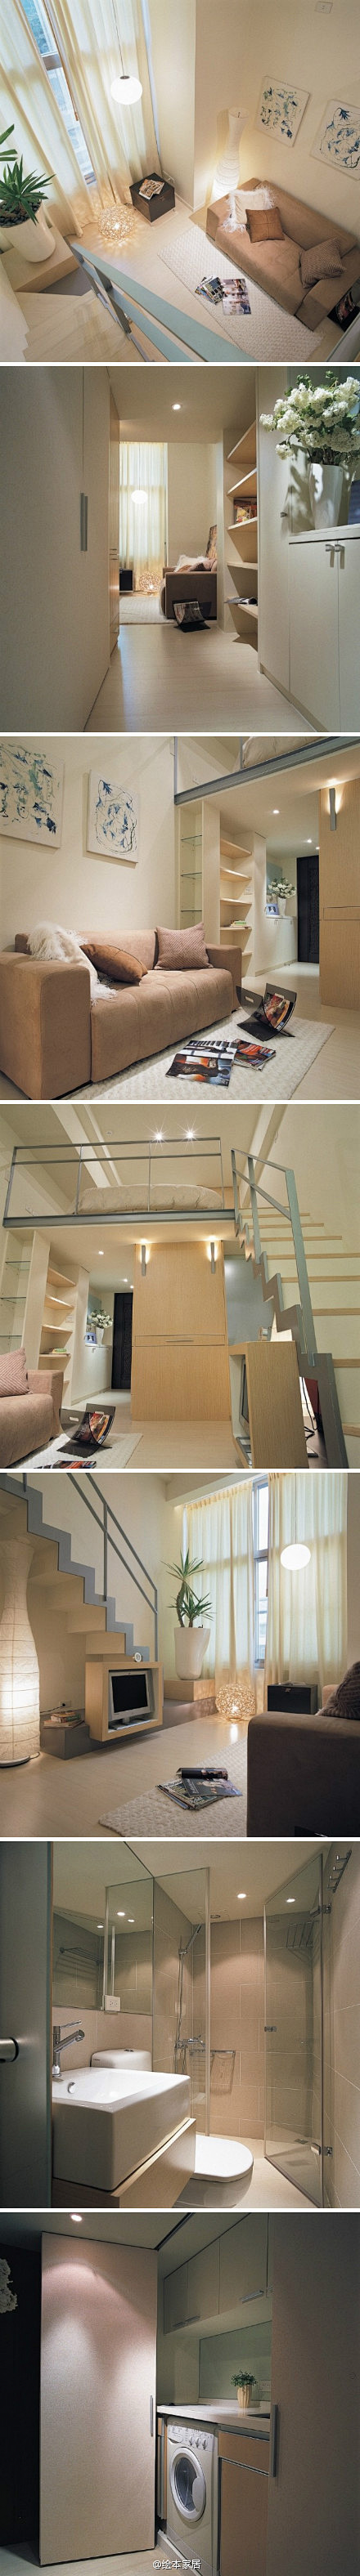 台湾设计师的46平米小户型Loft